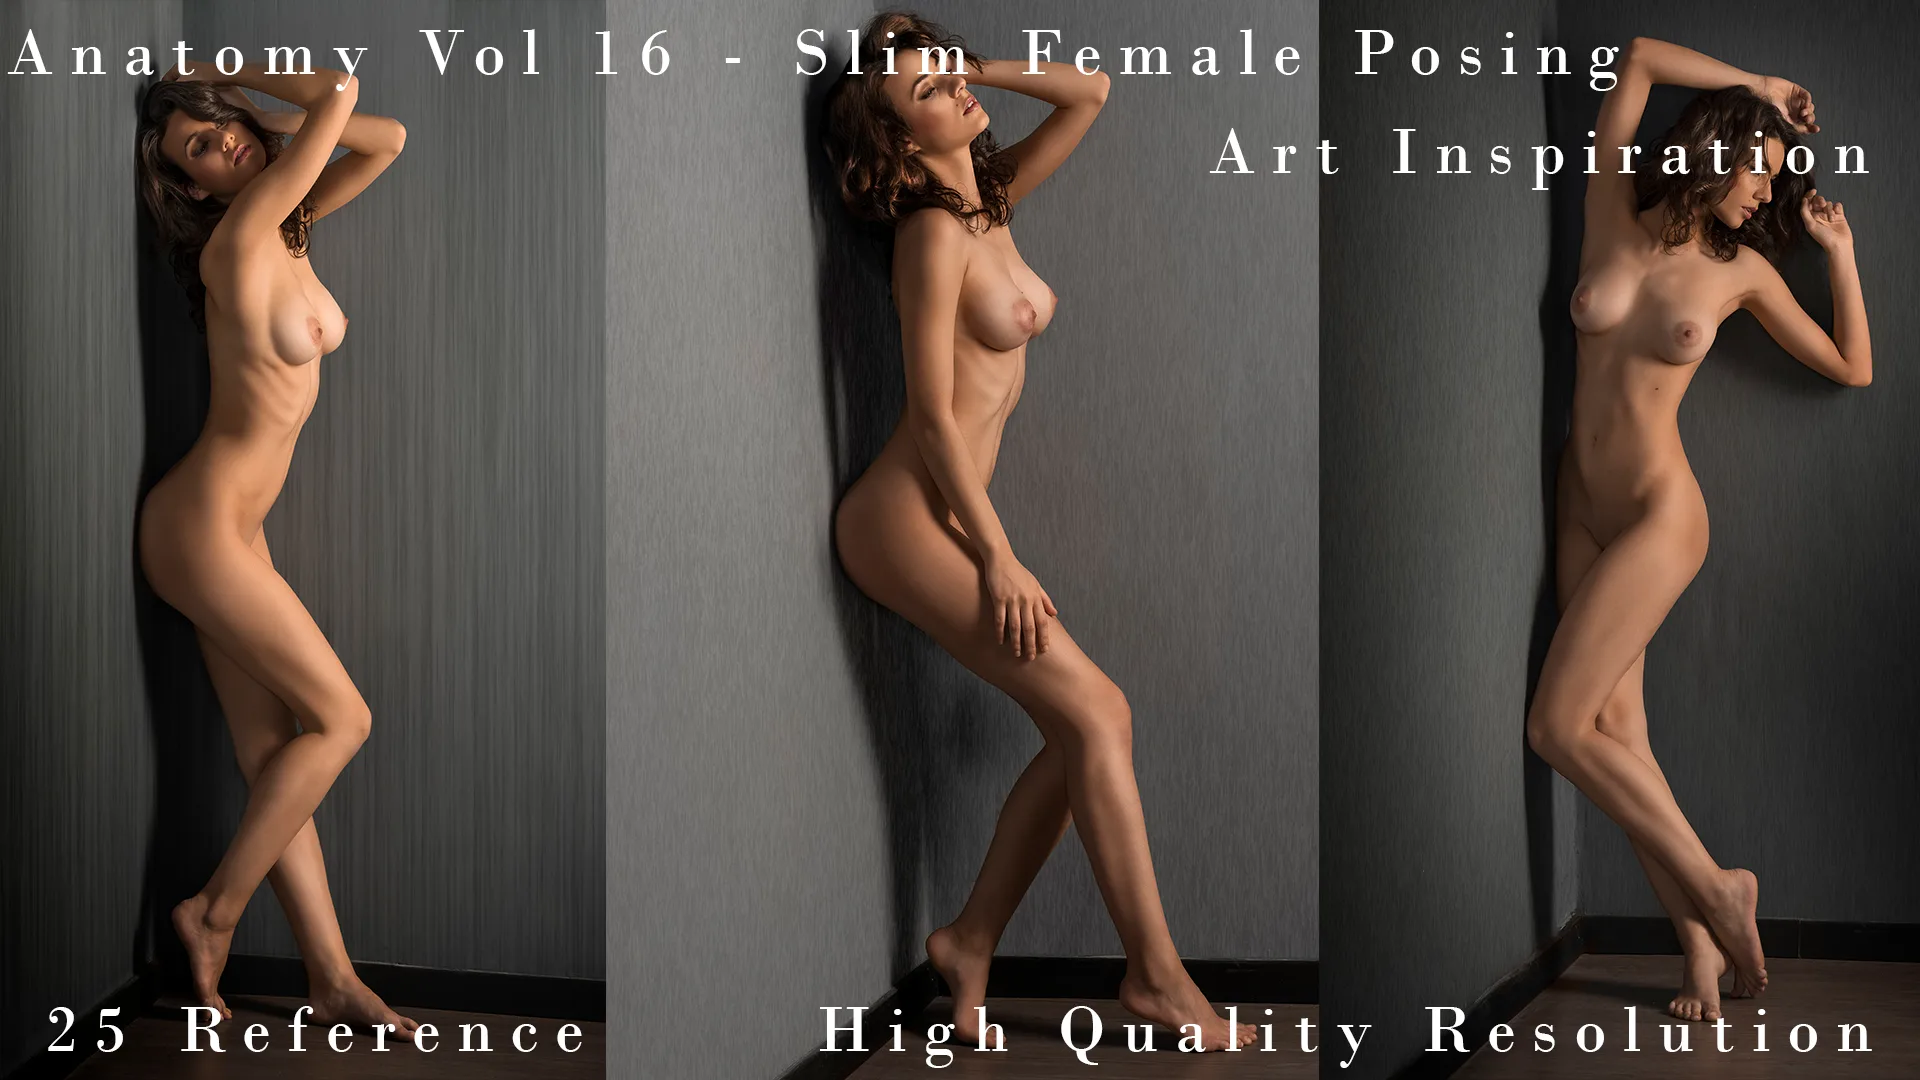 Anatomy Vol 16 - Slim FeMale Posing - Art Inspiration